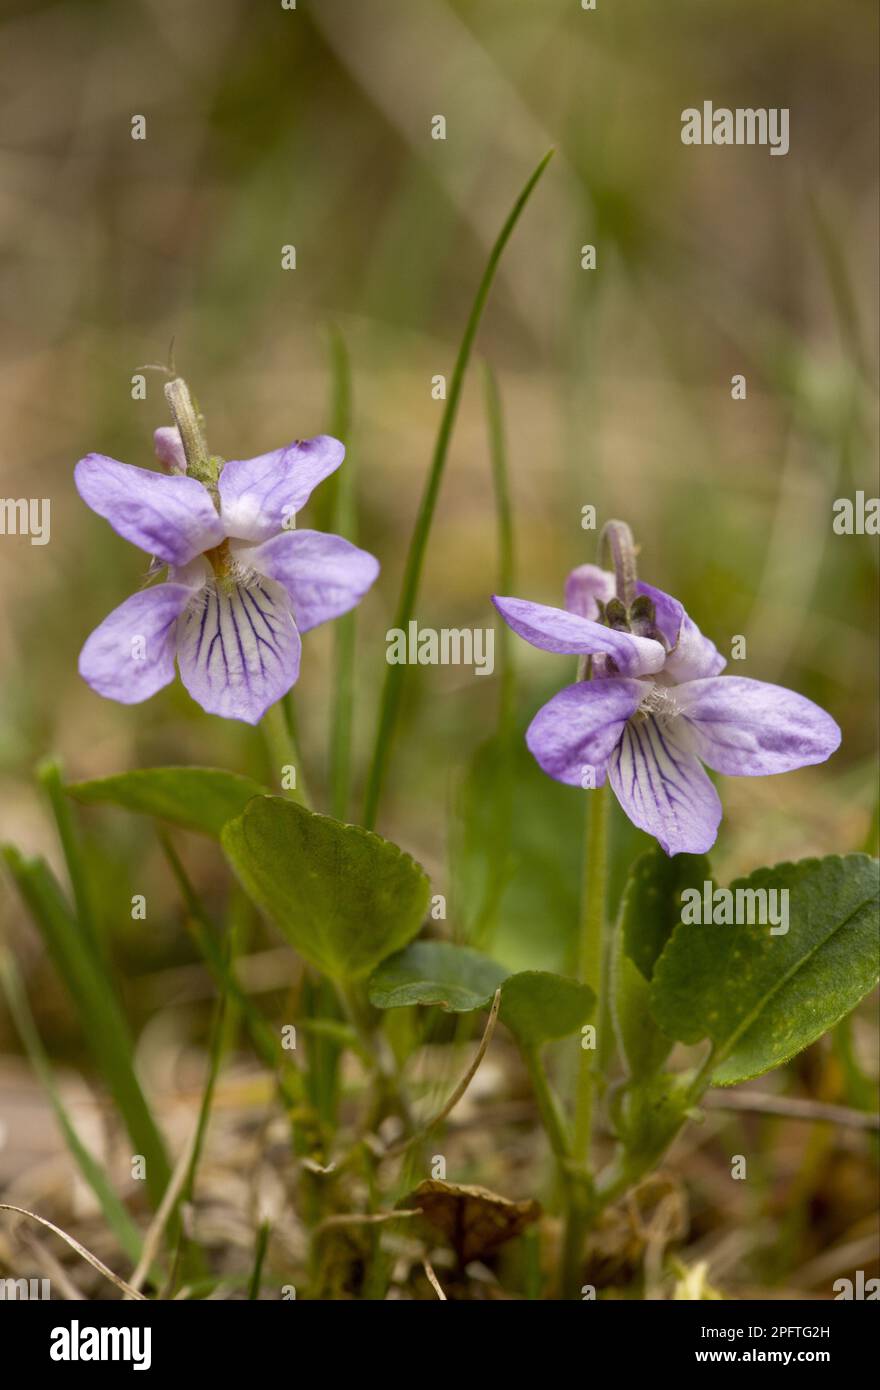 Teesdale Violet (Viola rupestris) flowering, Bulgaria Stock Photo